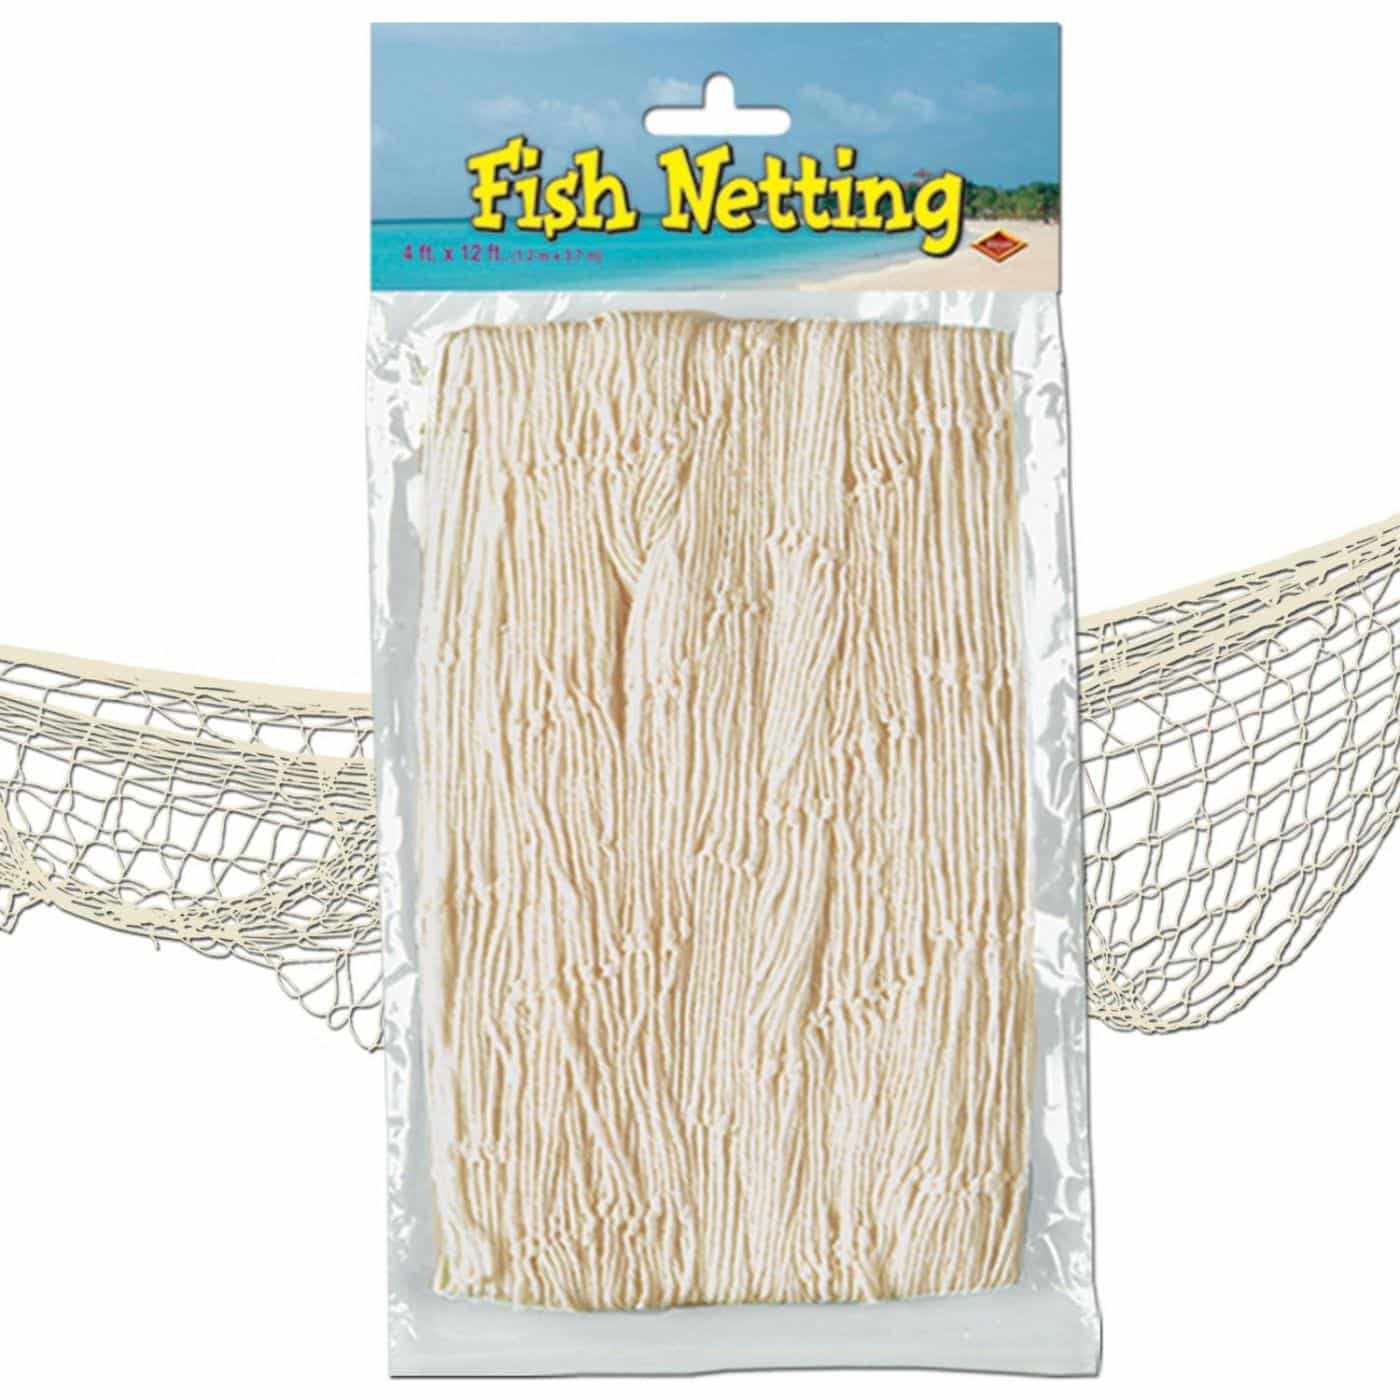 Red Fish Netting